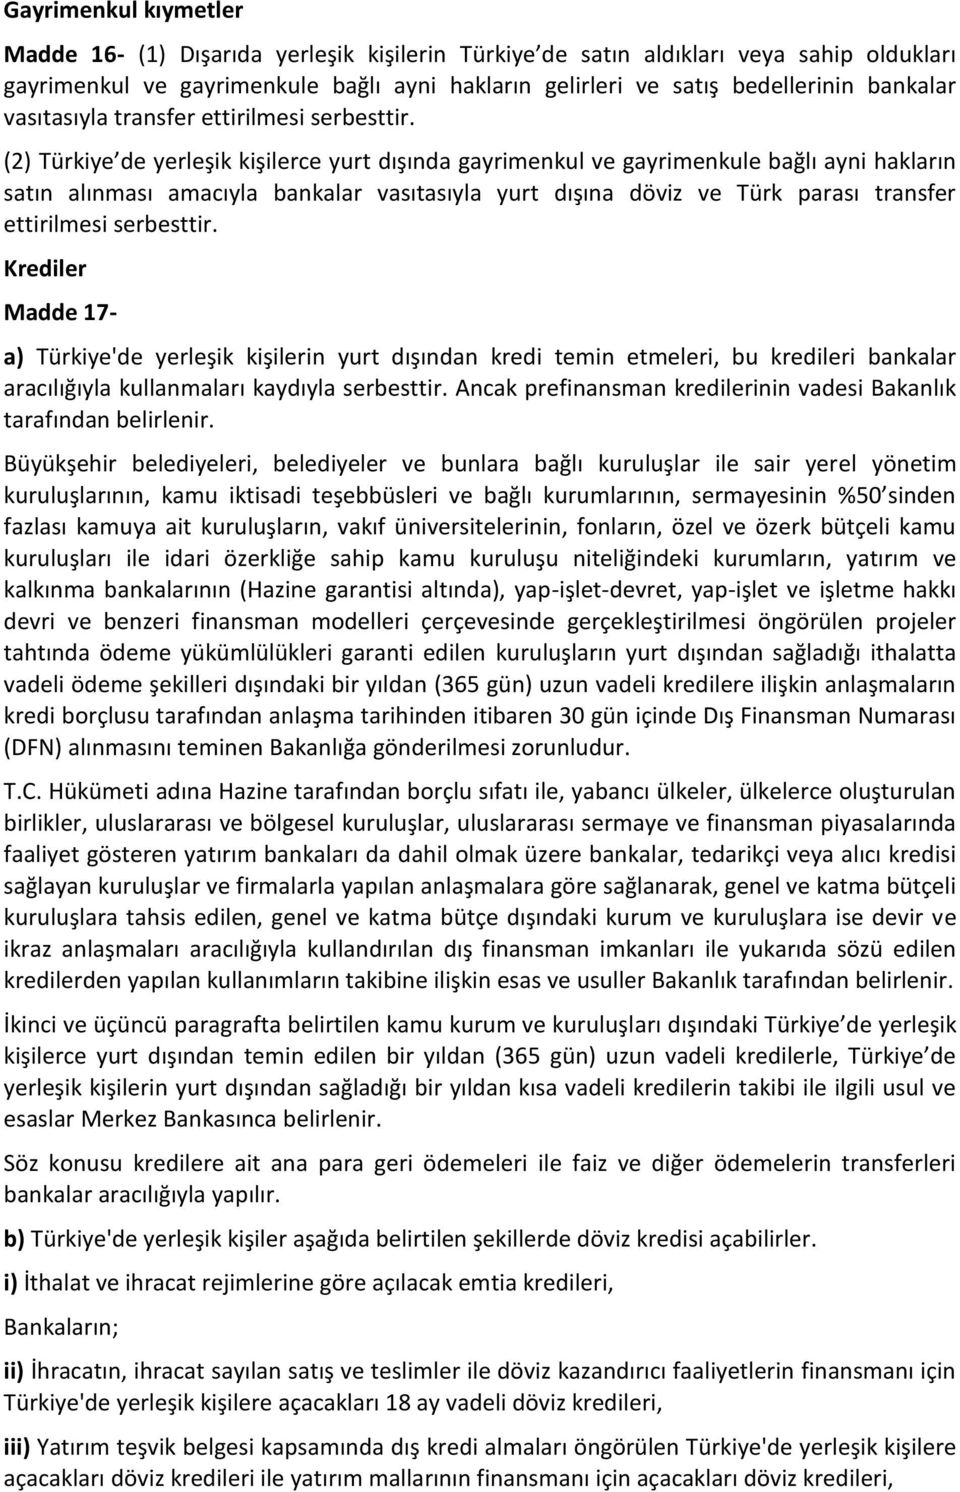 (2) Türkiye de yerleşik kişilerce yurt dışında gayrimenkul ve gayrimenkule bağlı ayni hakların satın alınması amacıyla bankalar vasıtasıyla yurt dışına döviz ve Türk parası transfer ettirilmesi